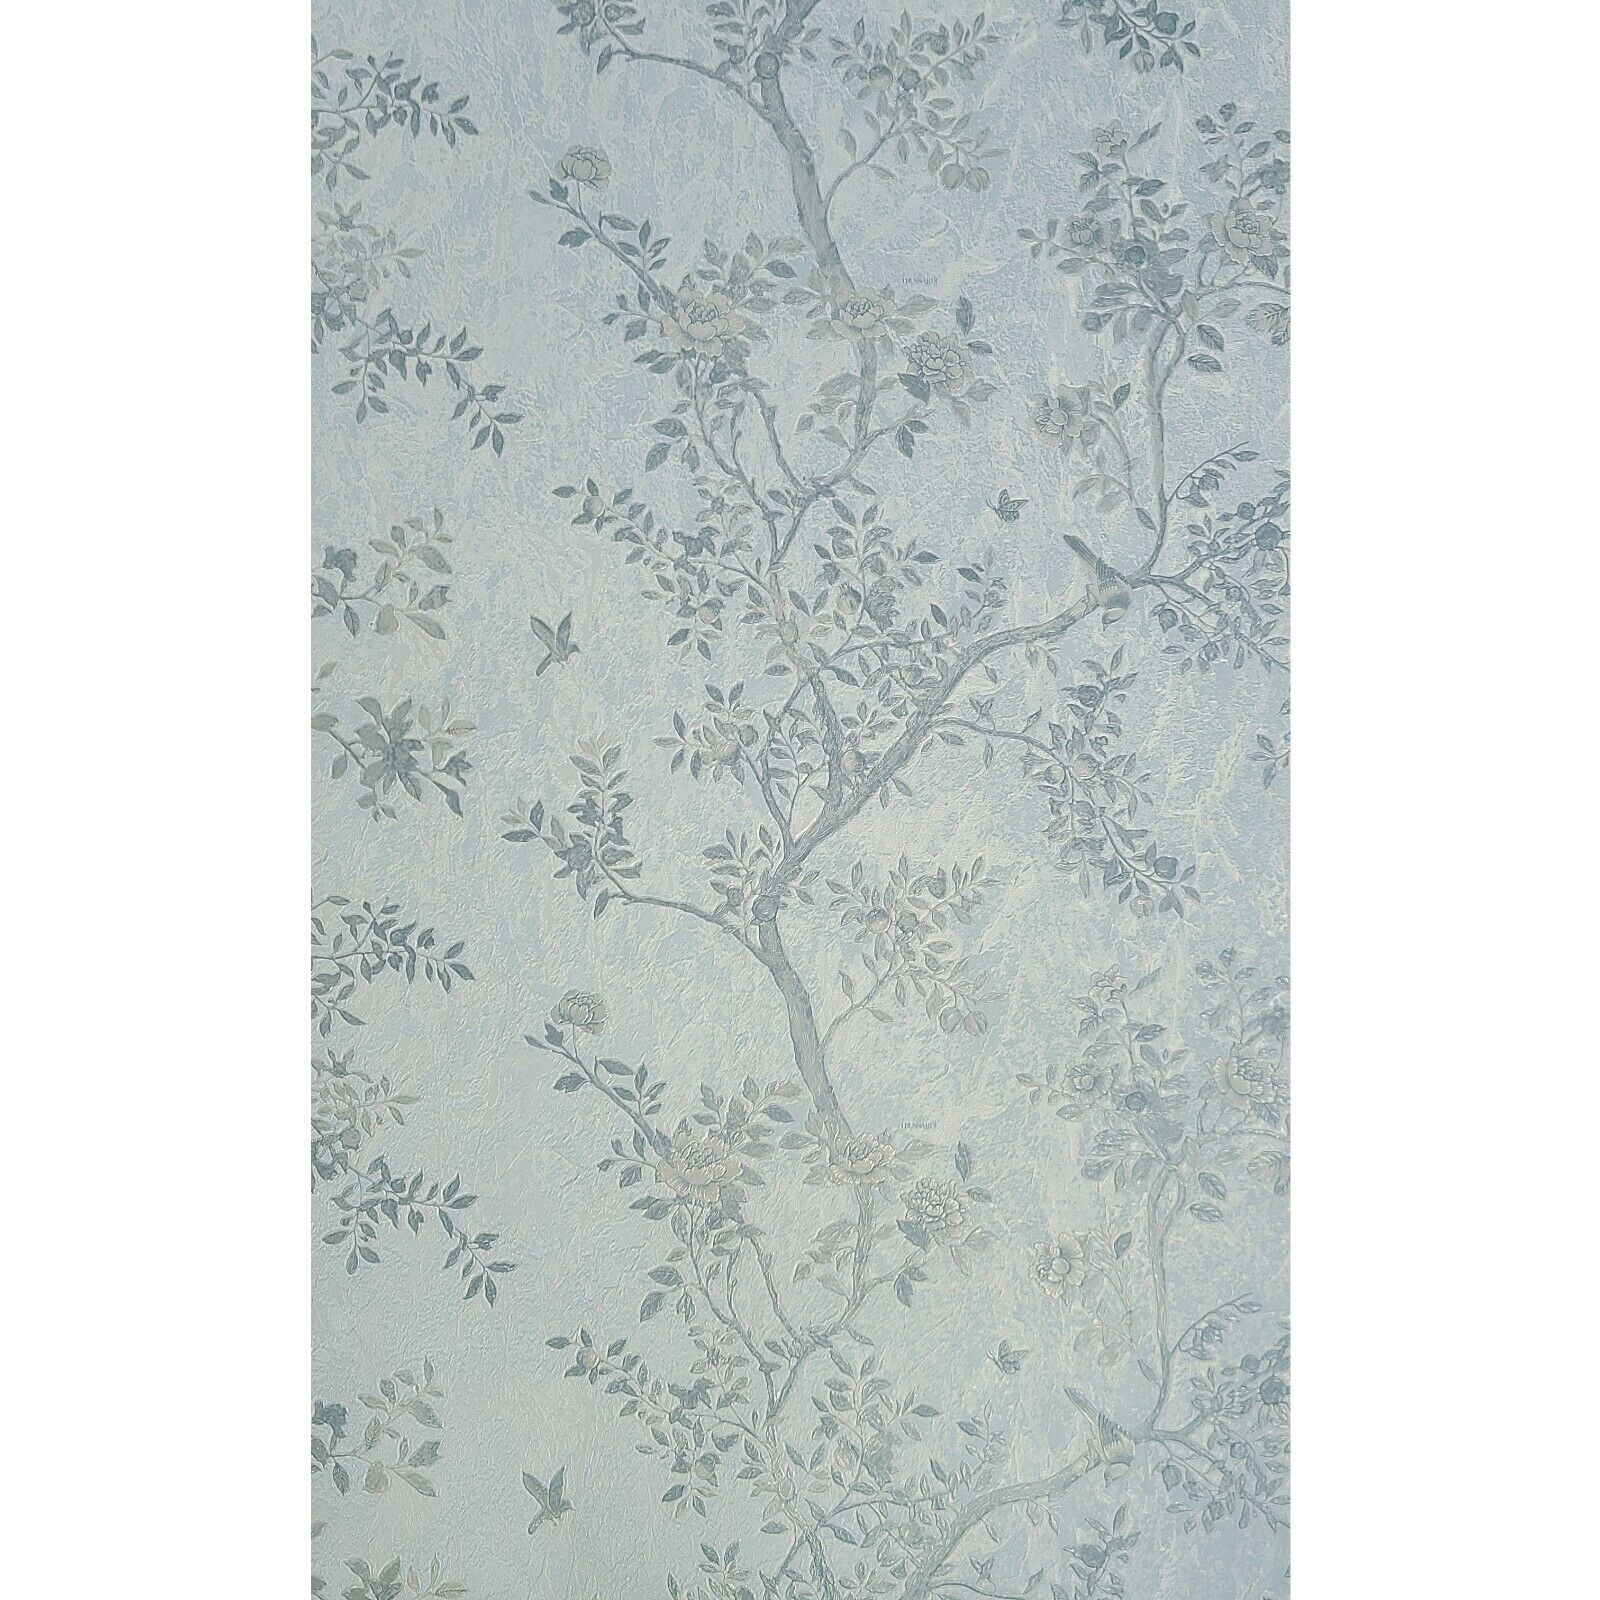 Z3450 Floral Baby blue Teal Beige Gold flower trees birds Wallpaper –  wallcoveringsmart